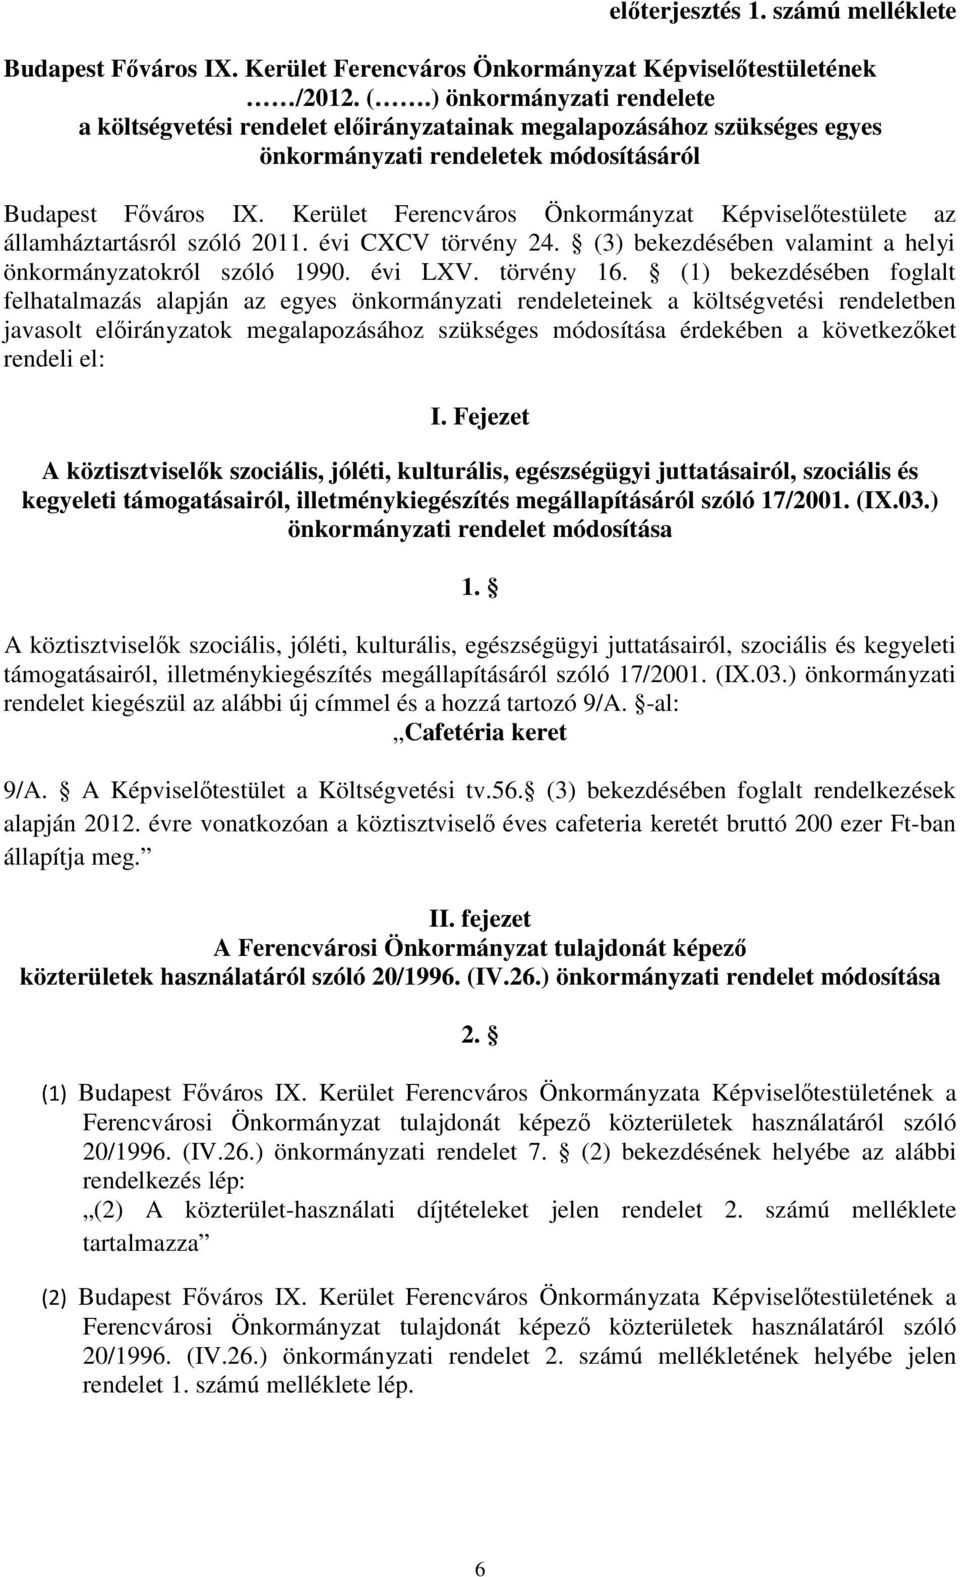 Kerület Ferencváros Önkormányzat Képviselőtestülete az államháztartásról szóló 2011. évi CXCV törvény 24. (3) bekezdésében valamint a helyi önkormányzatokról szóló 1990. évi LXV. törvény 16.